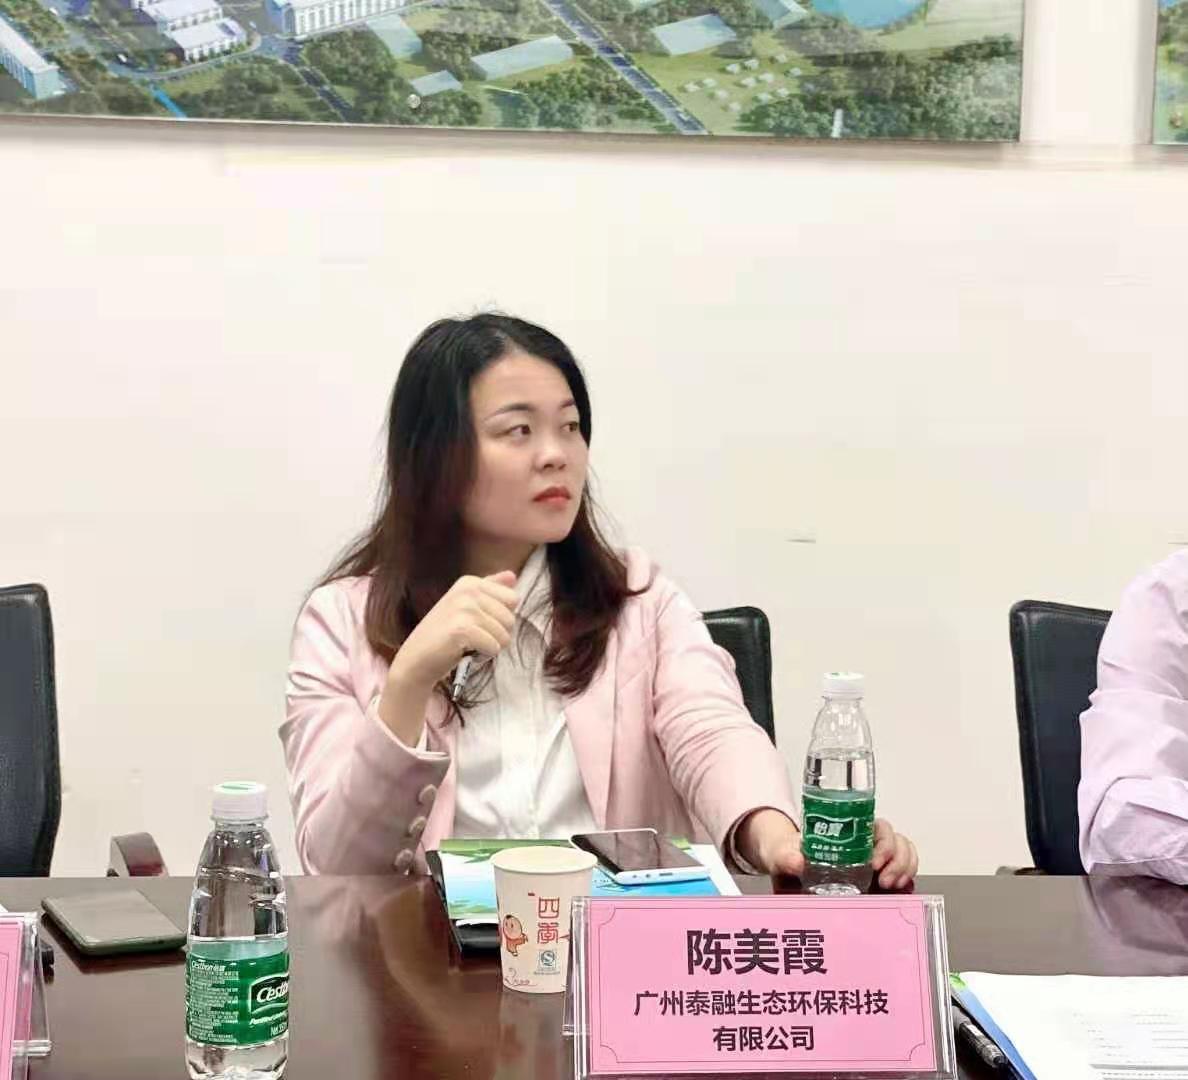 华南绿色工业创新联盟组织的企业家菁英沙龙会议